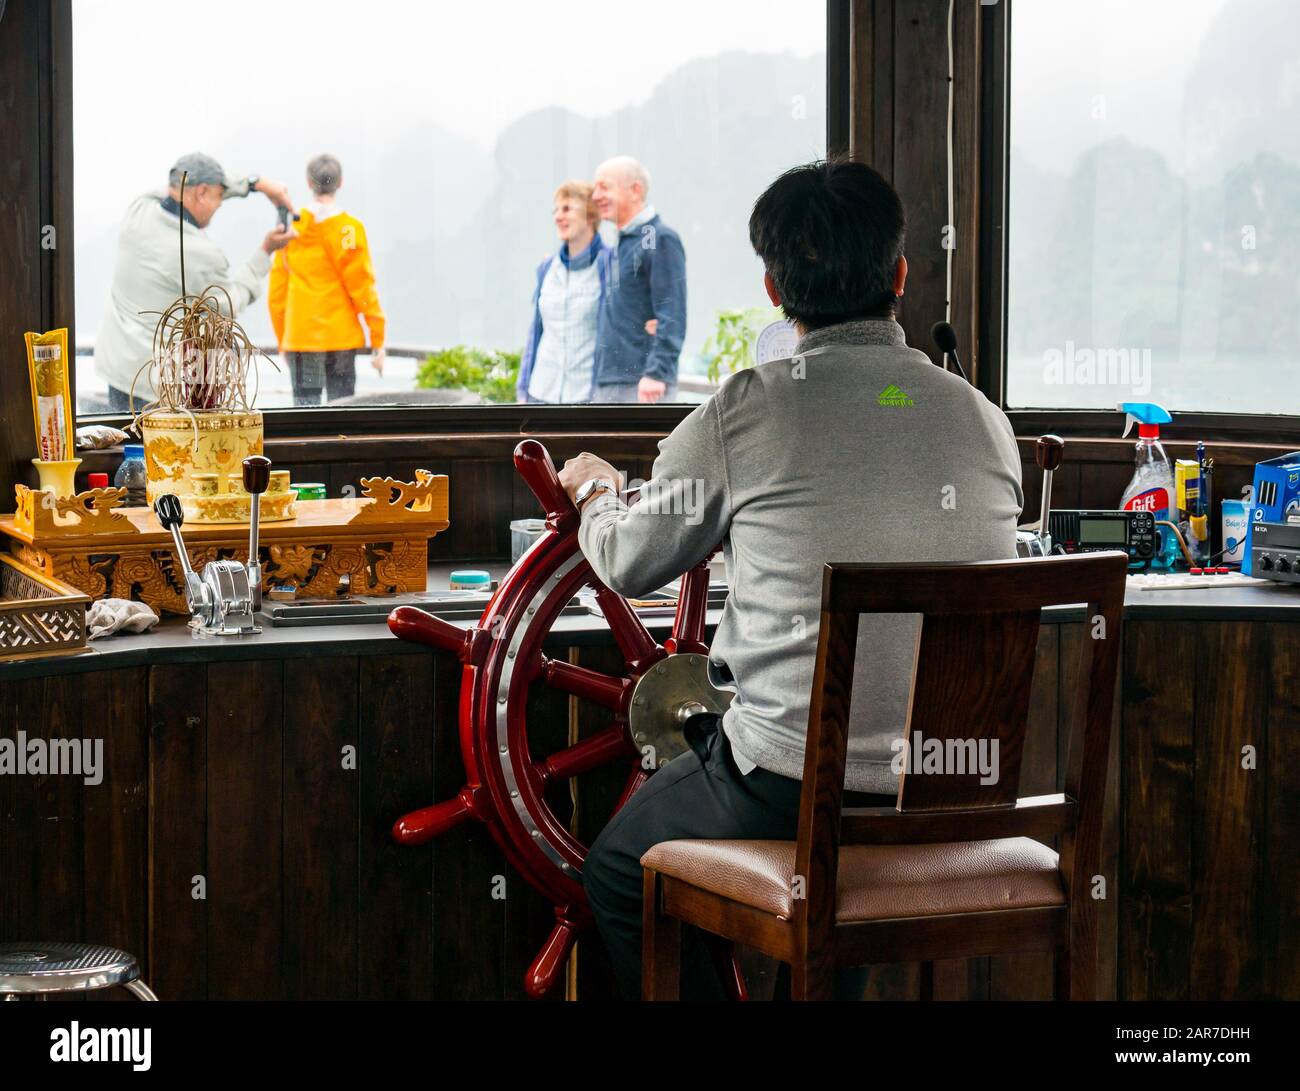 Uomo al volante del capitano in nave da crociera con i turisti che scattano foto sul ponte, Halong Bay, Vietnam, Asia Foto Stock